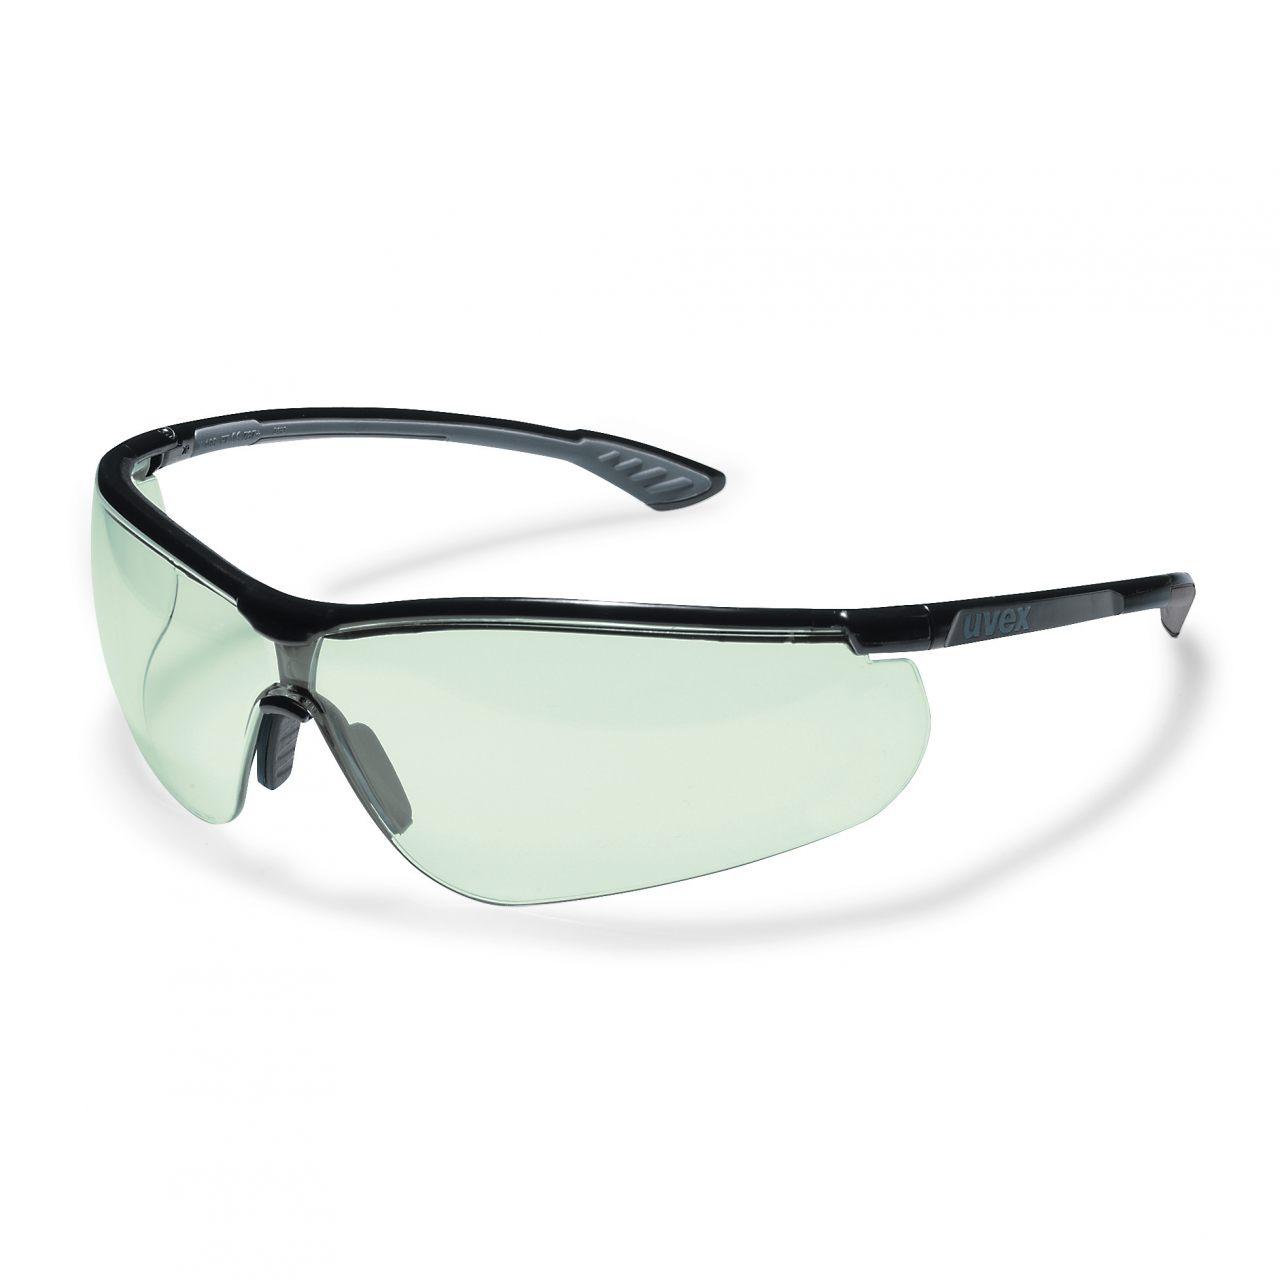 Защитные очки uvex спортстайл